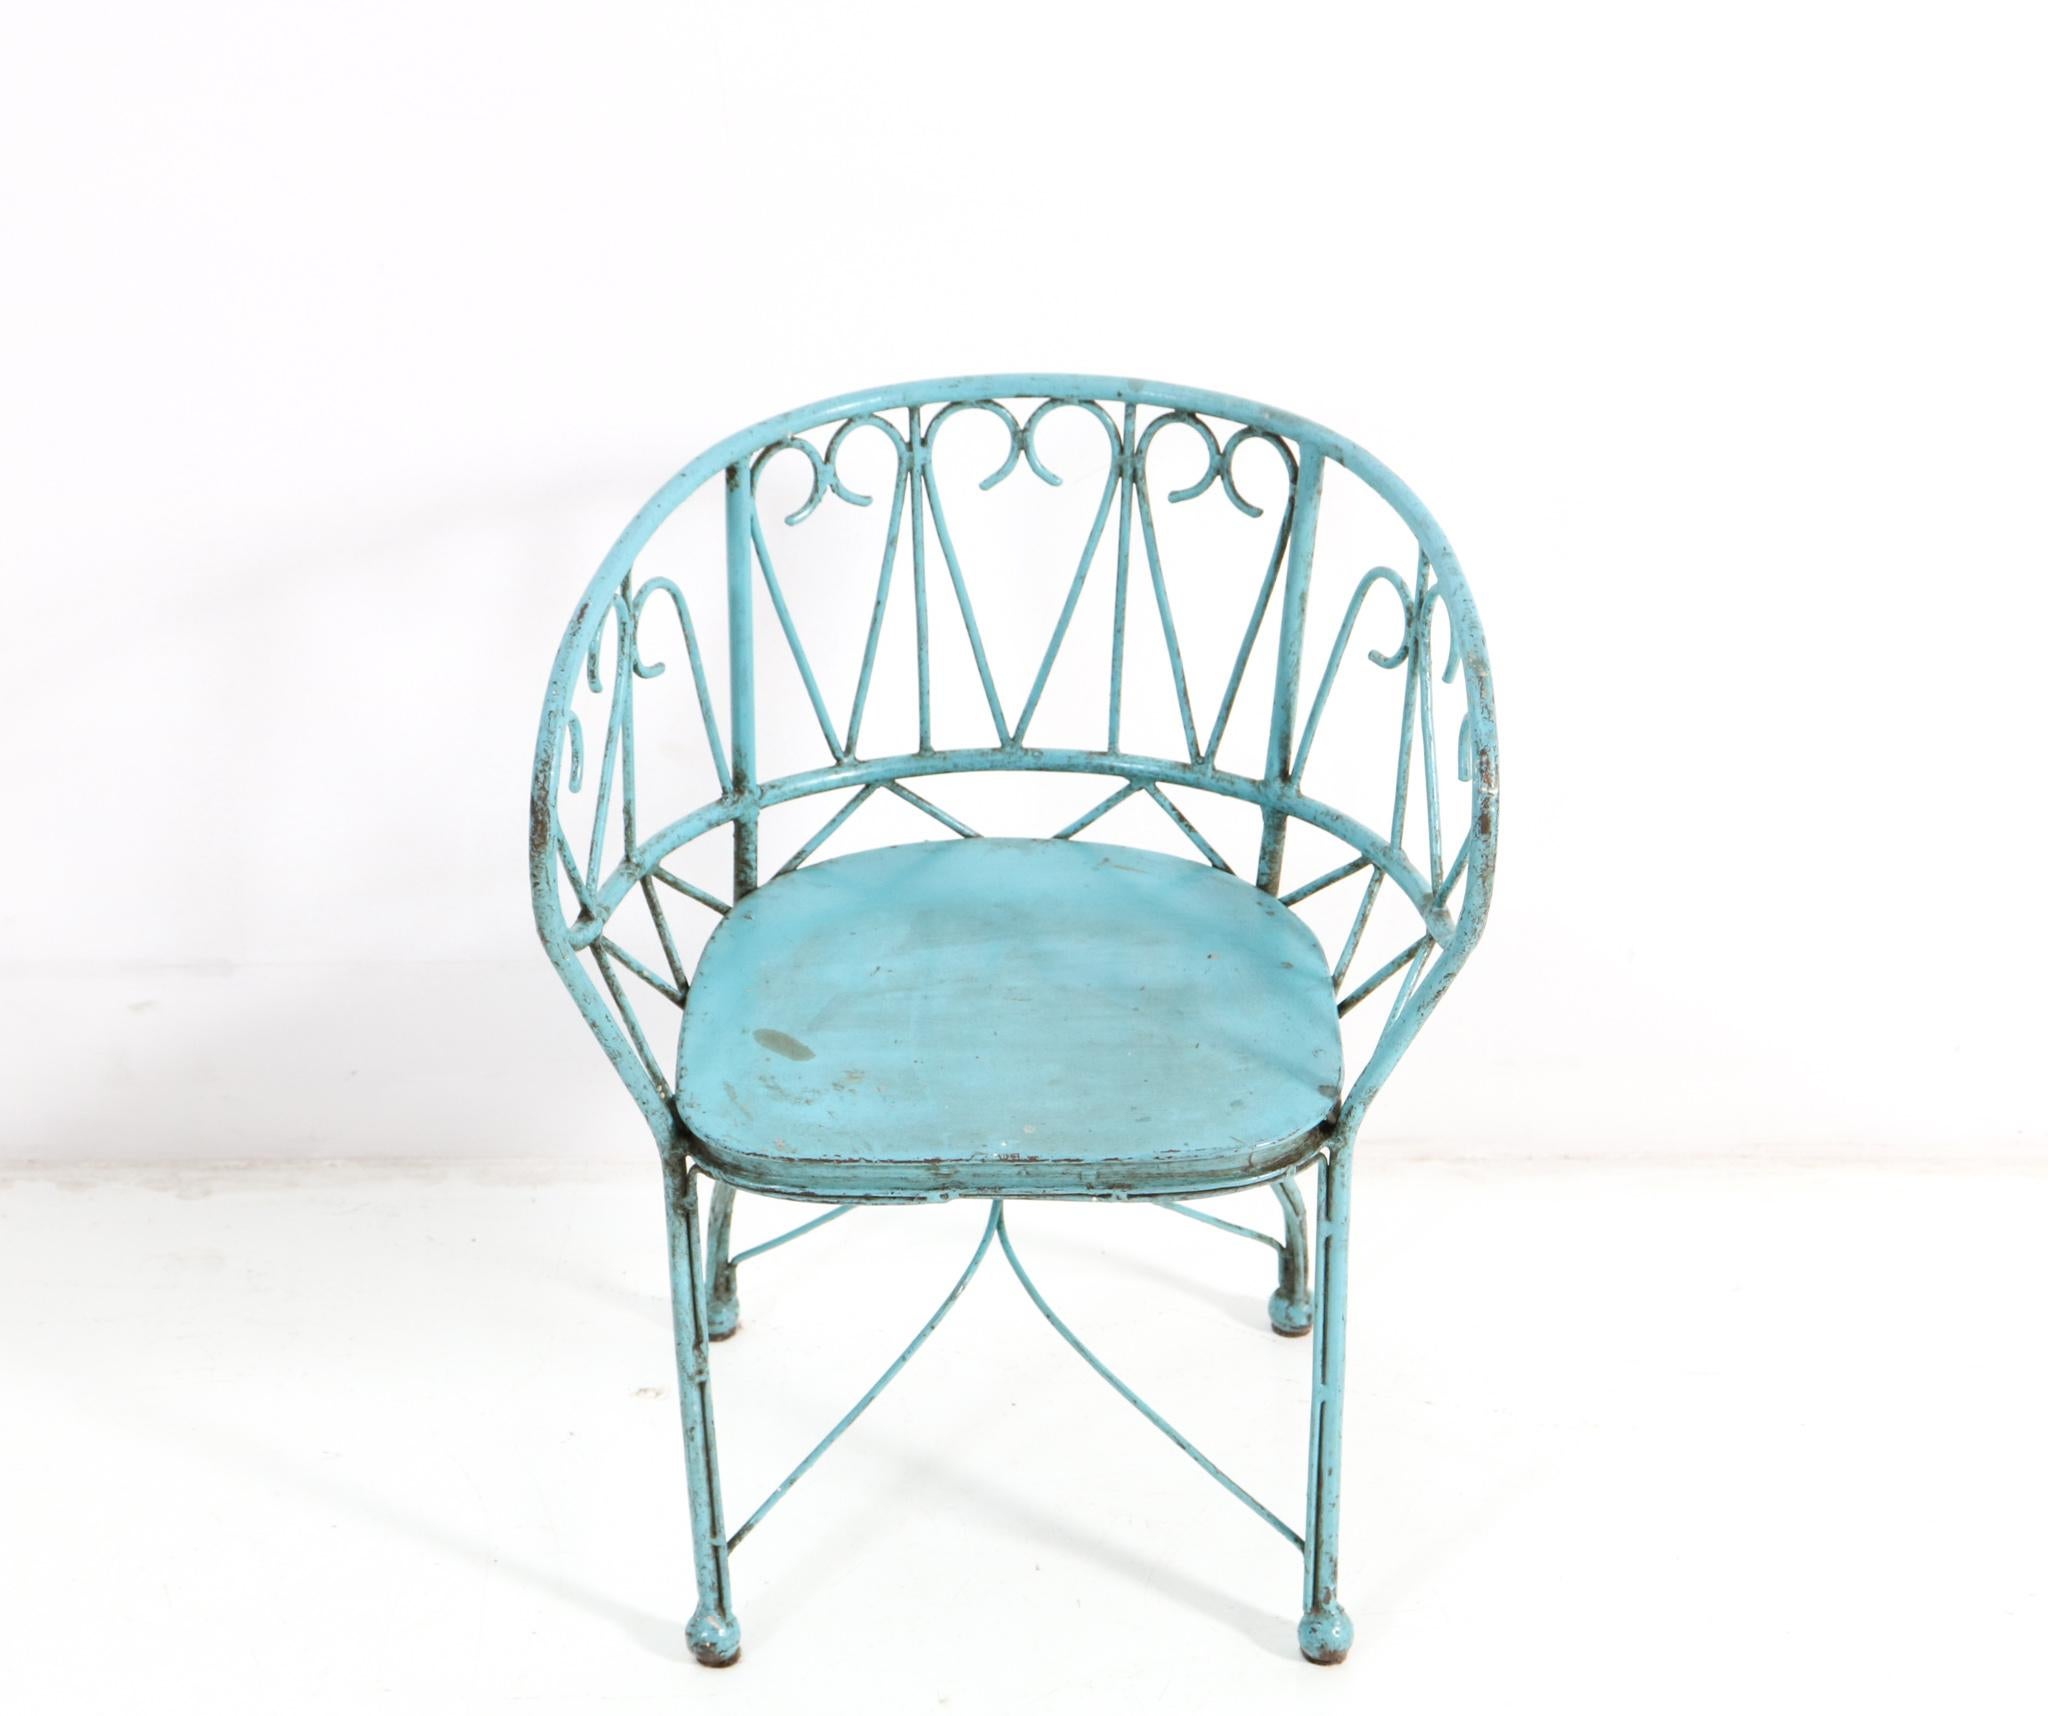 Superbe et rare fauteuil d'enfant Art Nouveau.
Un design français saisissant des années 1900.
Fer forgé laqué bleu.
Ce merveilleux fauteuil d'enfant Art Nouveau est en bon état.
avec une usure mineure conforme à l'âge et à l'usage, préservant